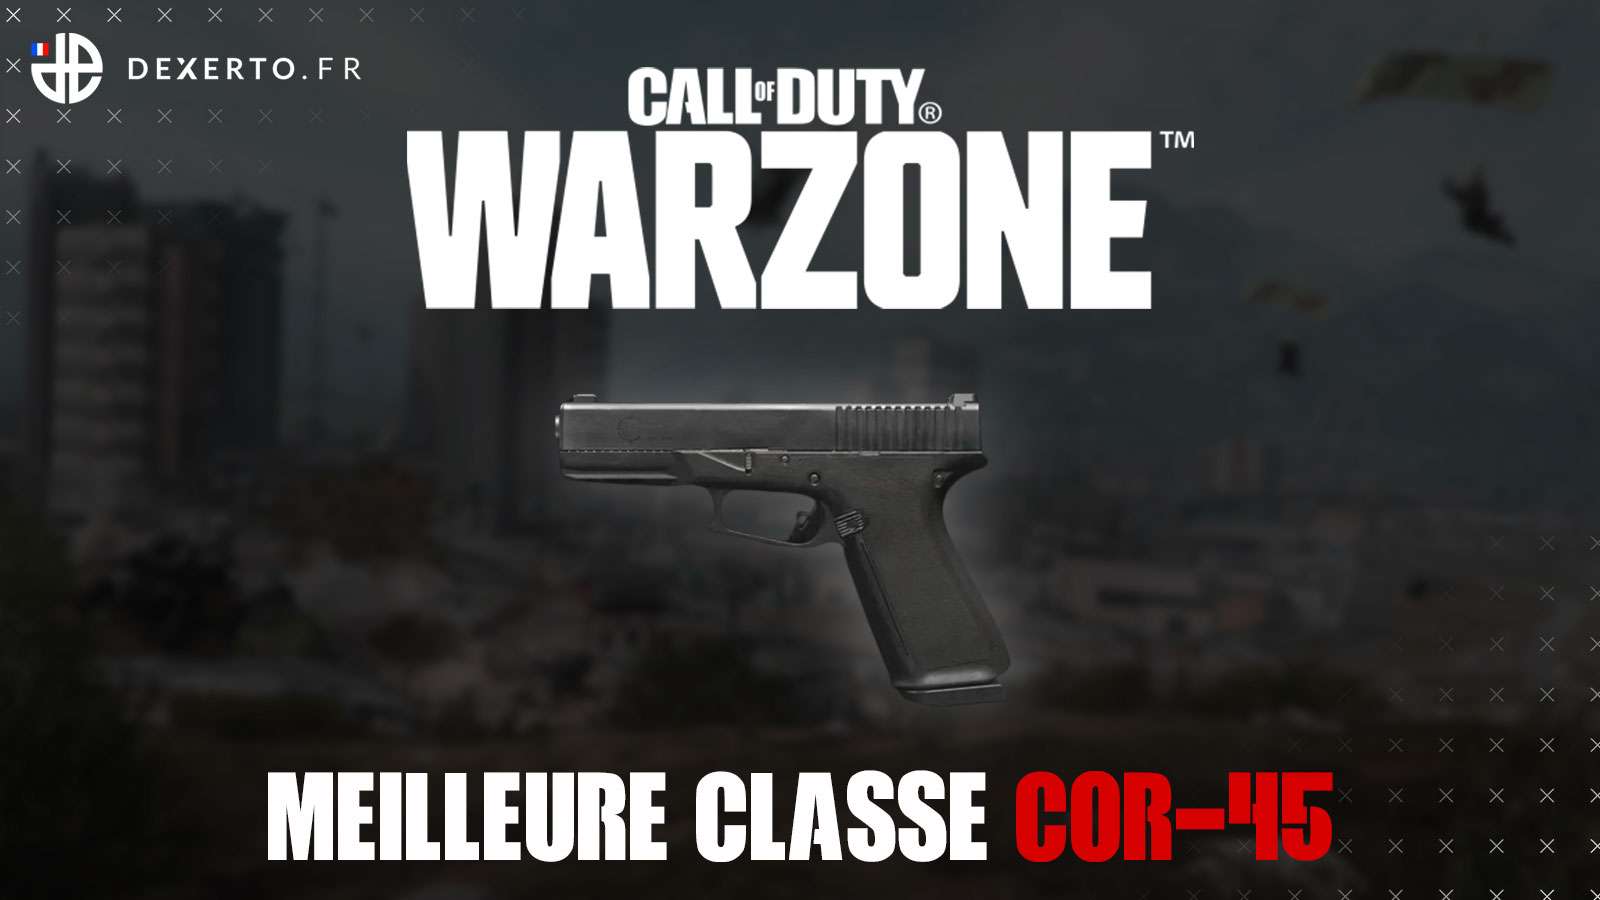 Warzone COR-45 classe